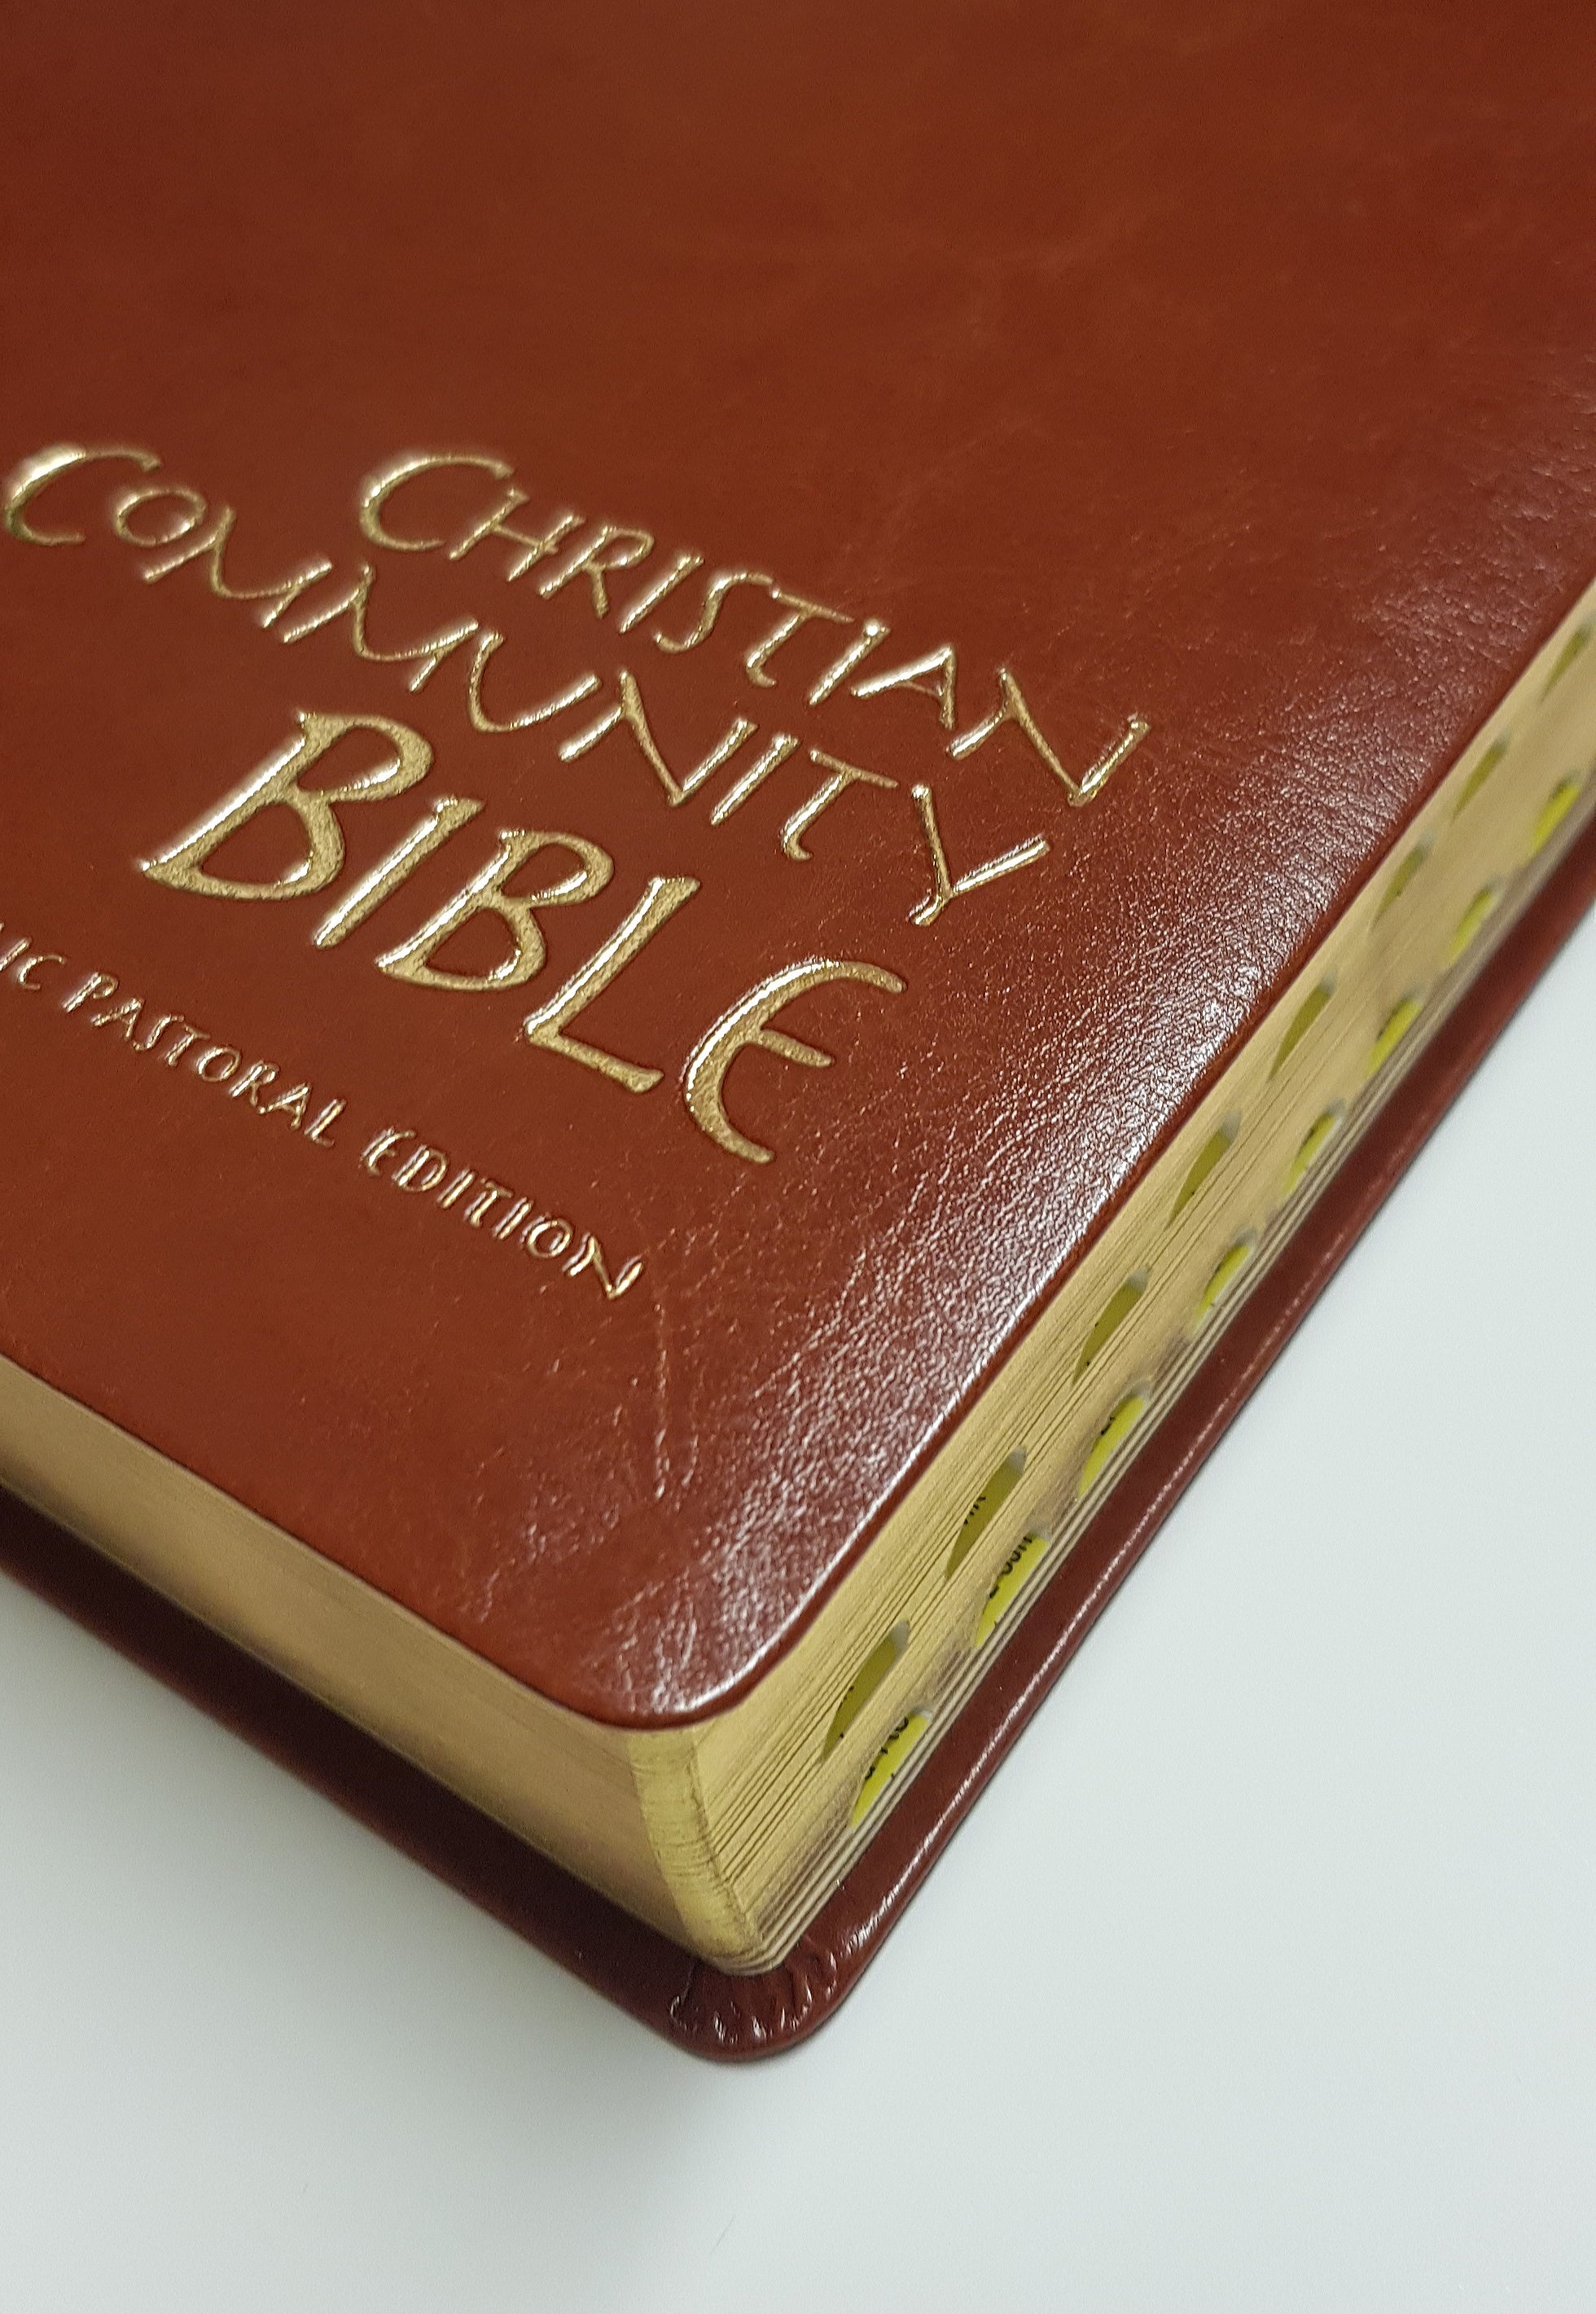 Catholic Christian Community Bible - Family Edition Leather Gilt & Indexed